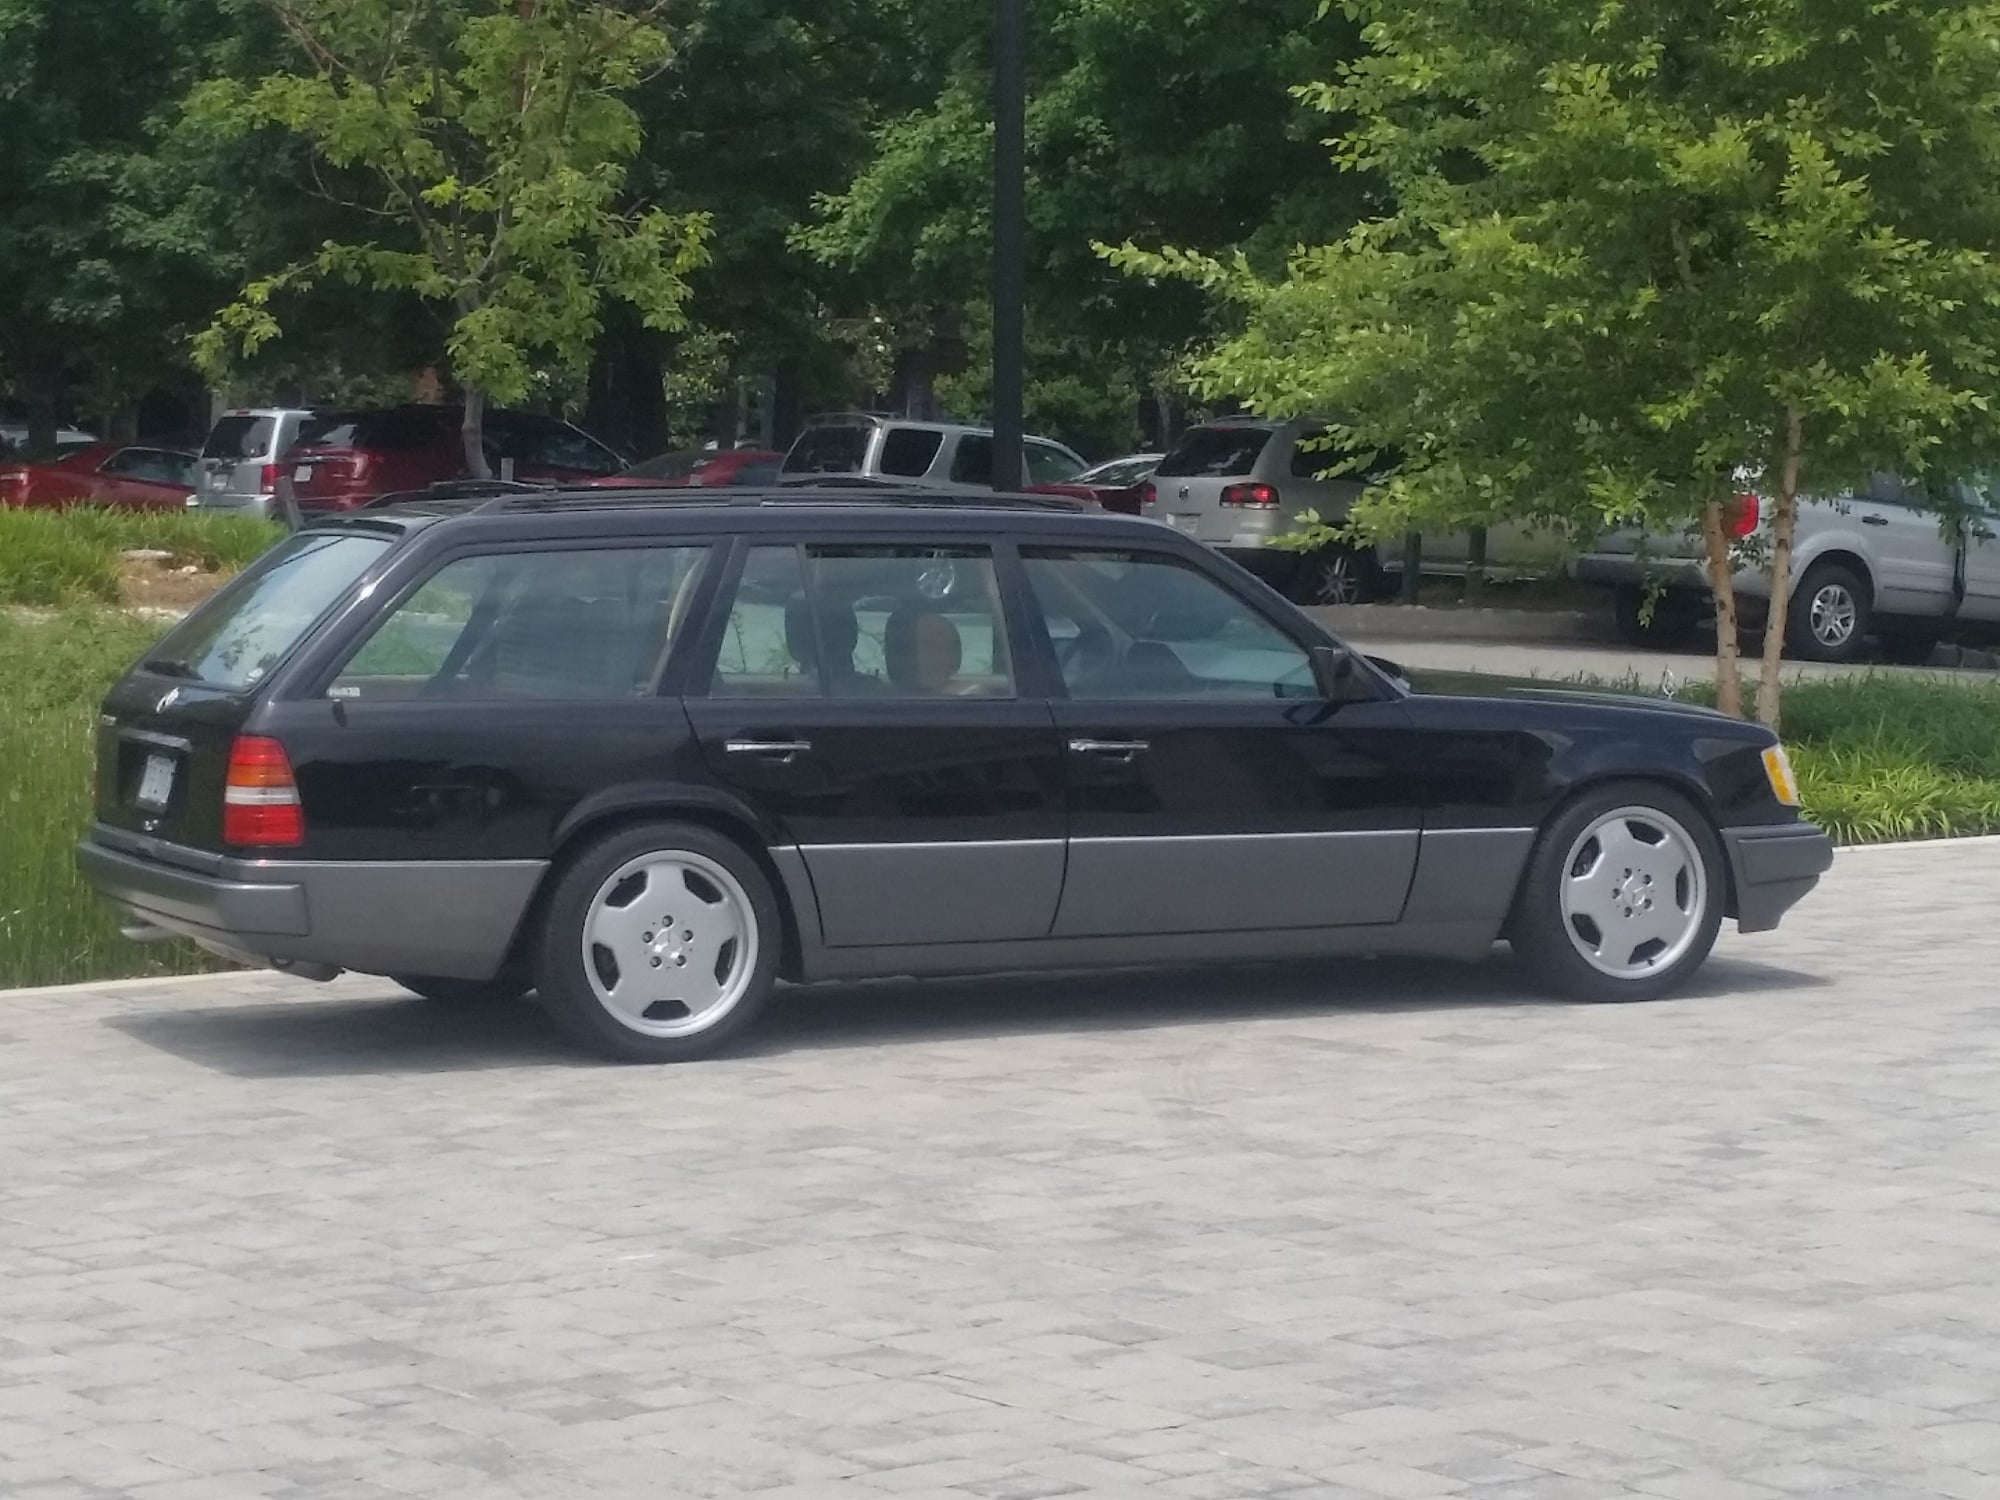 1995 Mercedes-Benz E320 - 1995 W124 E320 wagon 197k $4100 - Used - VIN WDBEA92E8SF322593 - 197,400 Miles - 6 cyl - 2WD - Automatic - Wagon - Black - Richmond, VA 23225, United States